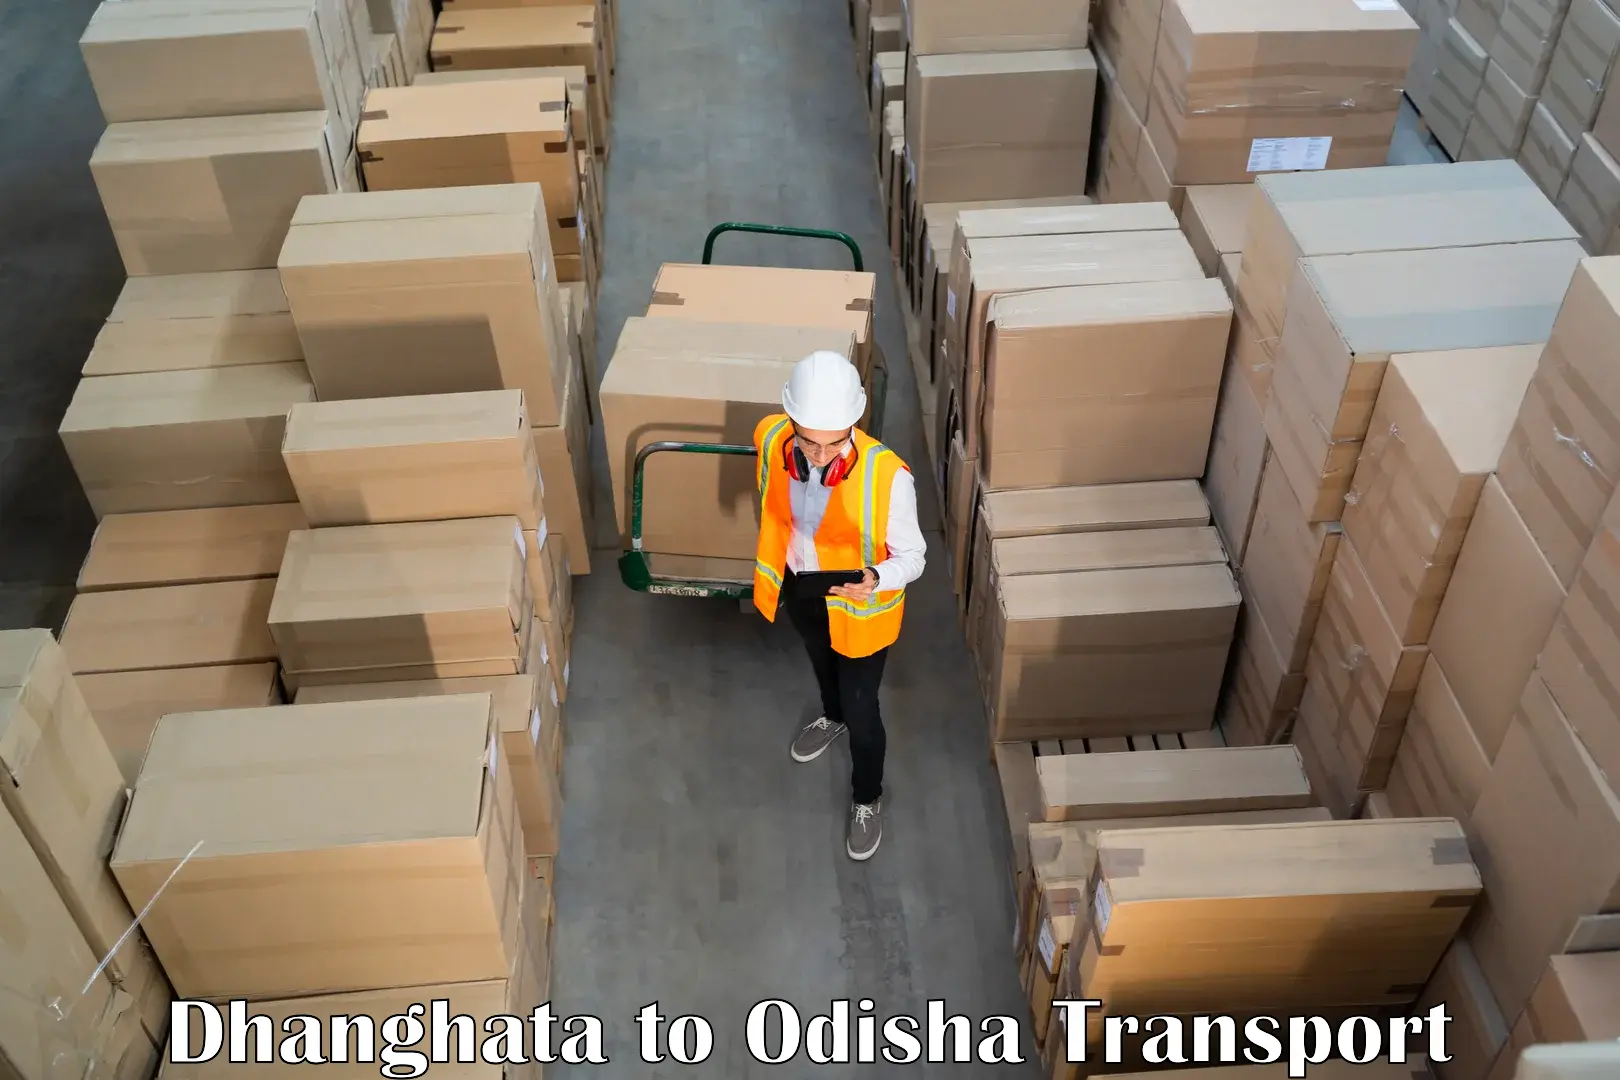 Online transport service Dhanghata to NIT Rourkela